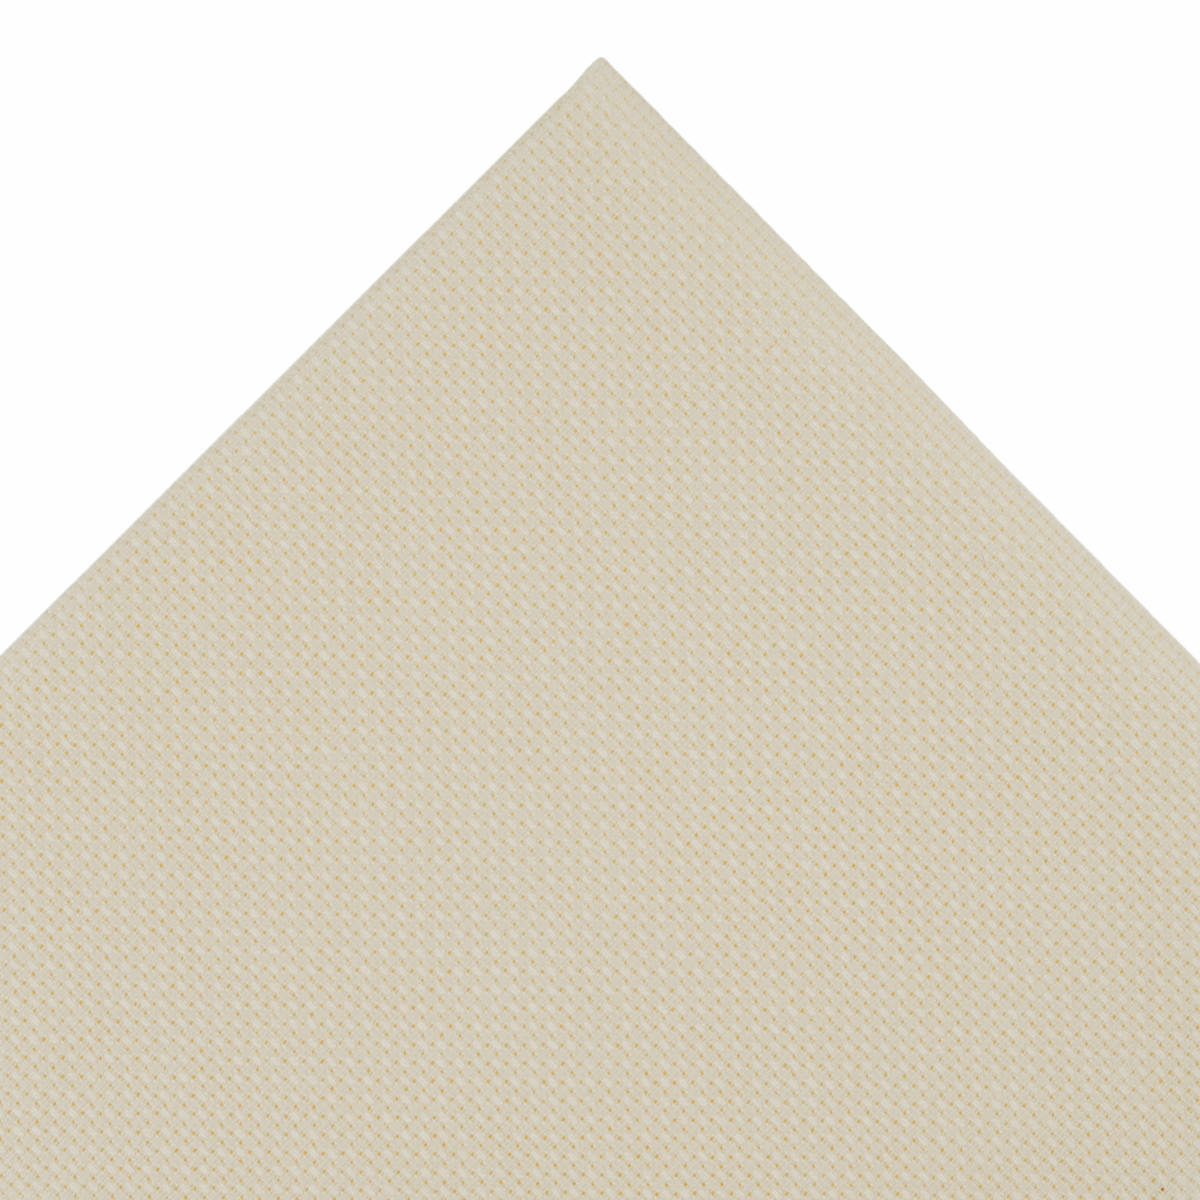 Trimits Cream Needlecraft Fabric - Aida 16 Count 45 x 30cm